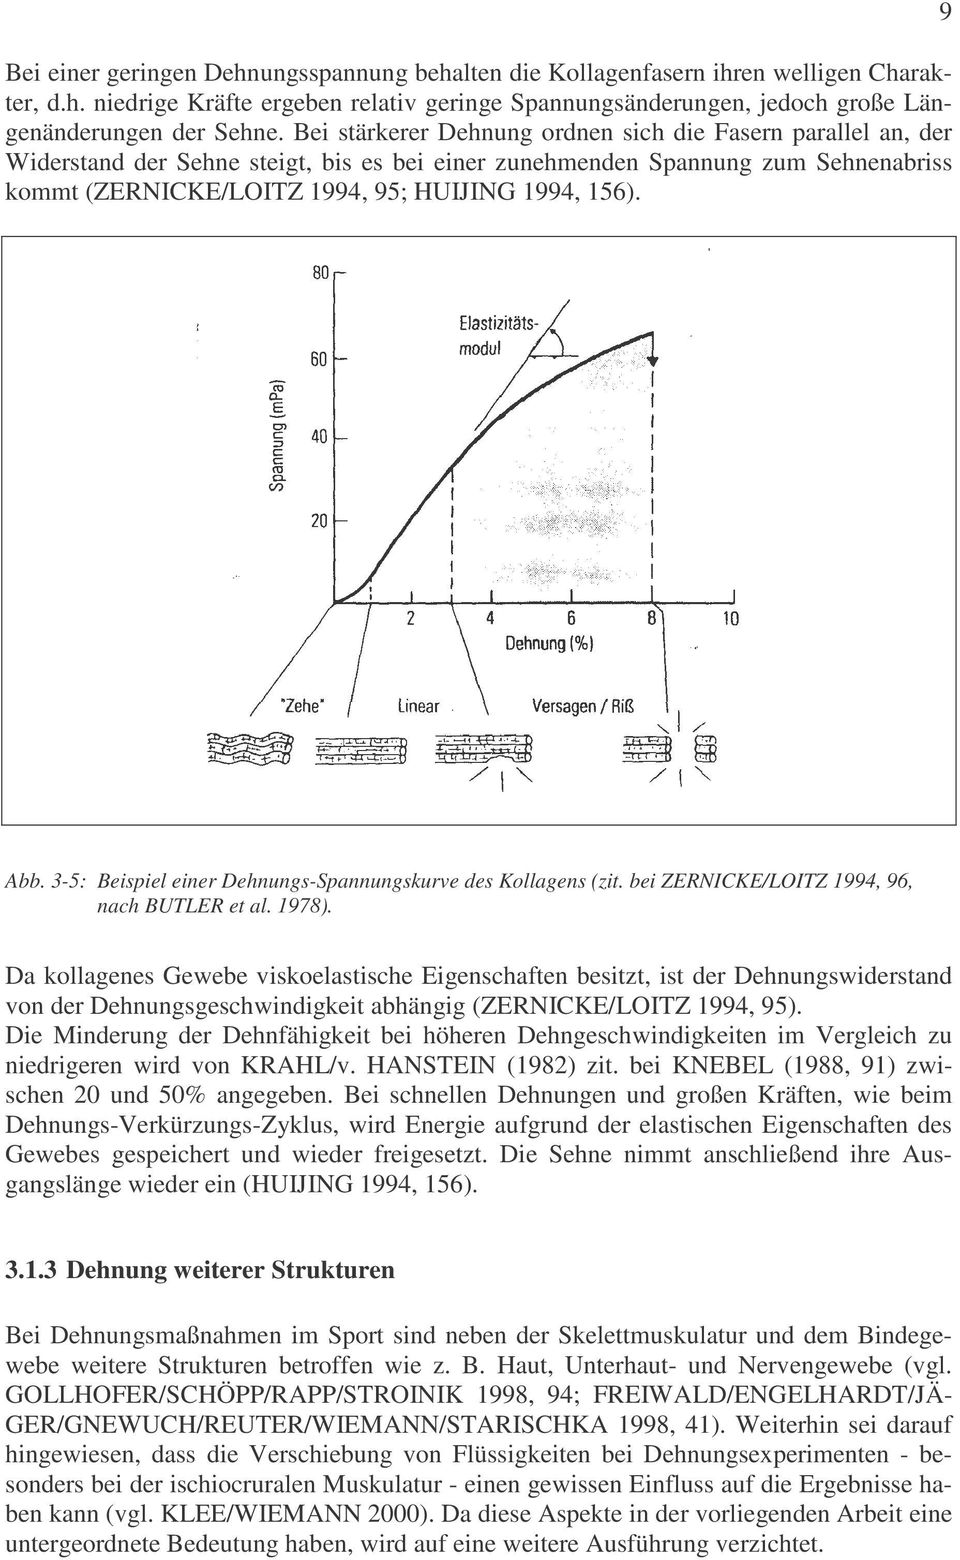 9 Abb. 3-5: Beispiel einer Dehnungs-Spannungskurve des Kollagens (zit. bei ZERNICKE/LOITZ 1994, 96, nach BUTLER et al. 1978).